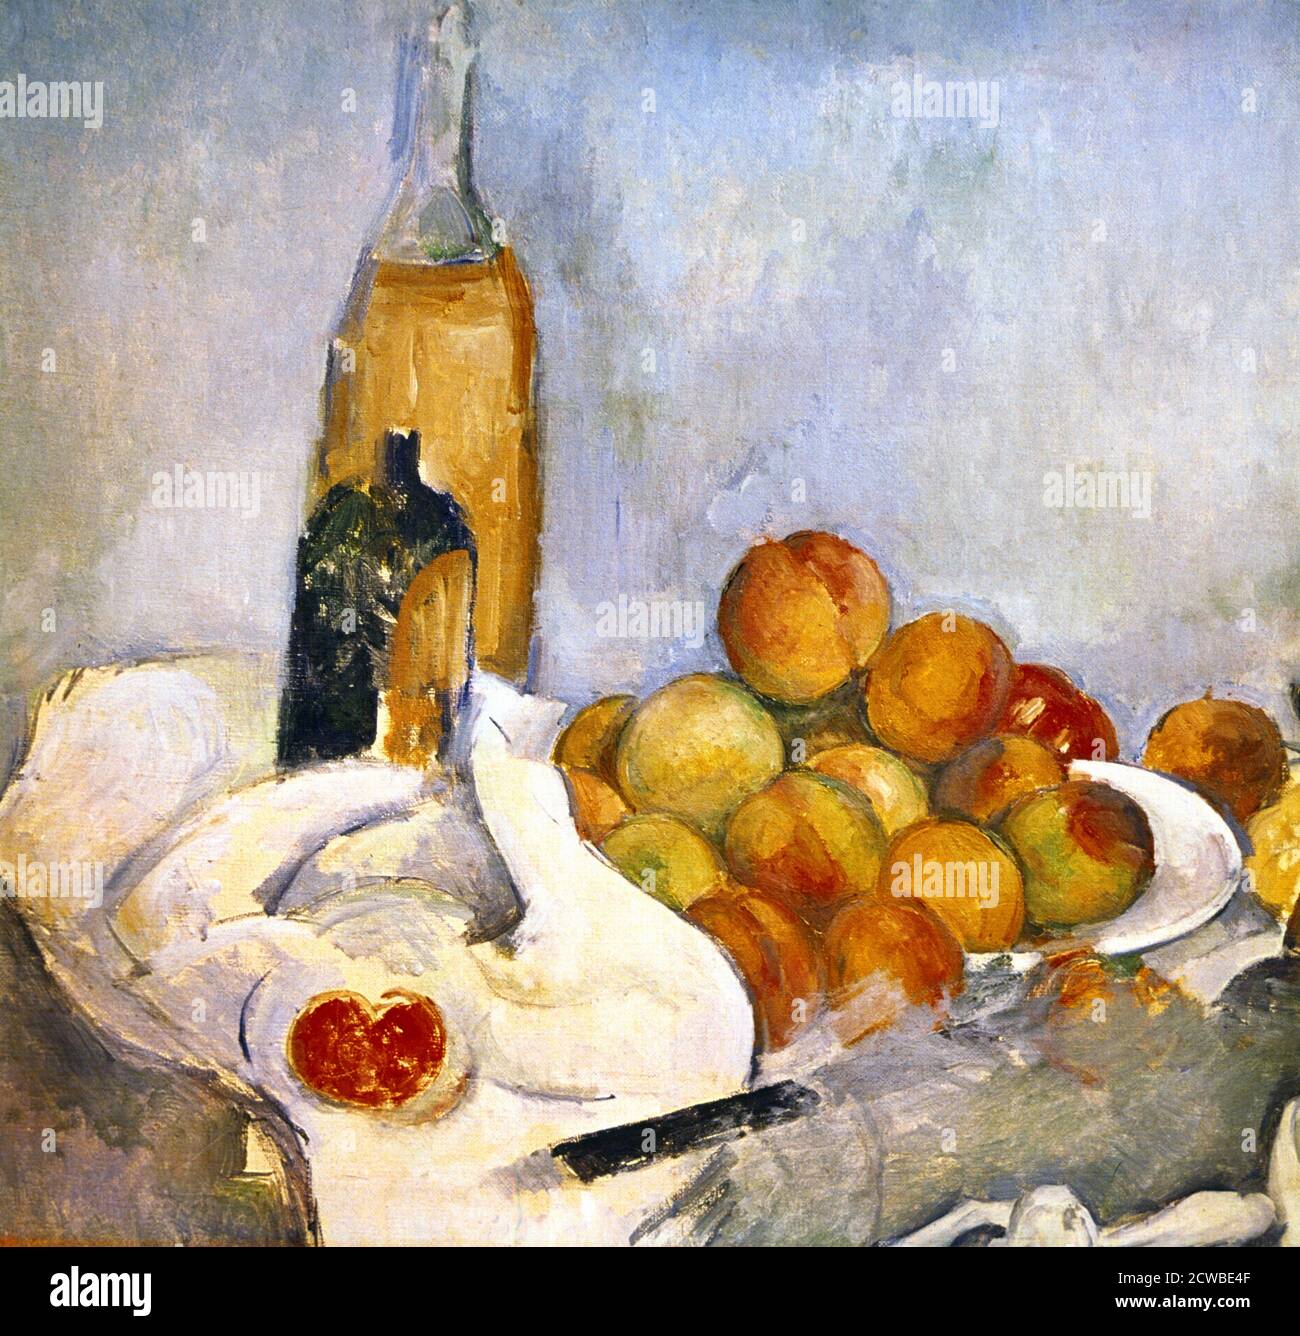 Bottiglie e mele, c1870-1906. Artista: Paul Cezanne. Cezanne (1839-1906) fu un artista francese e pittore post-impressionista il cui lavoro gettò le basi per la transizione dal movimento impressionista del XIX secolo agli stili del XX secolo come il cubismo. Foto Stock